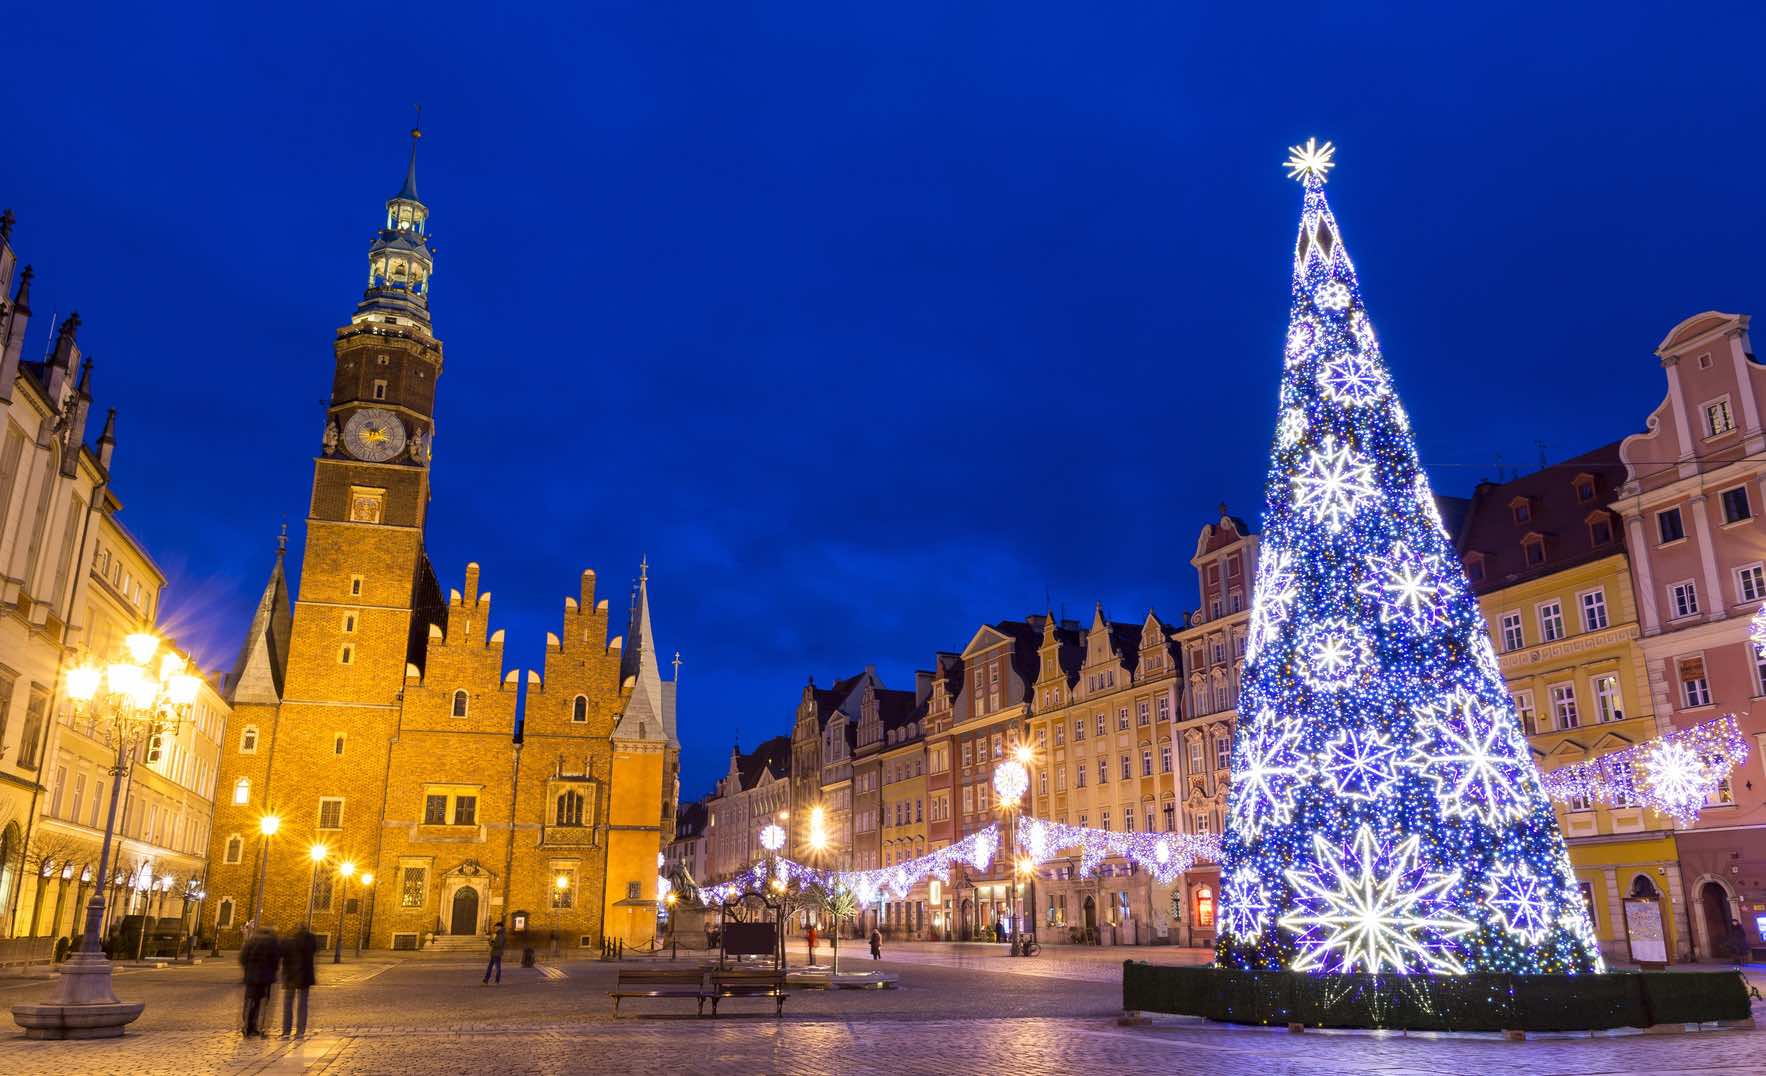 Natale Dove Si Festeggia.Il Natale In Polonia Come Si Festeggia Il Natale A Breslavia